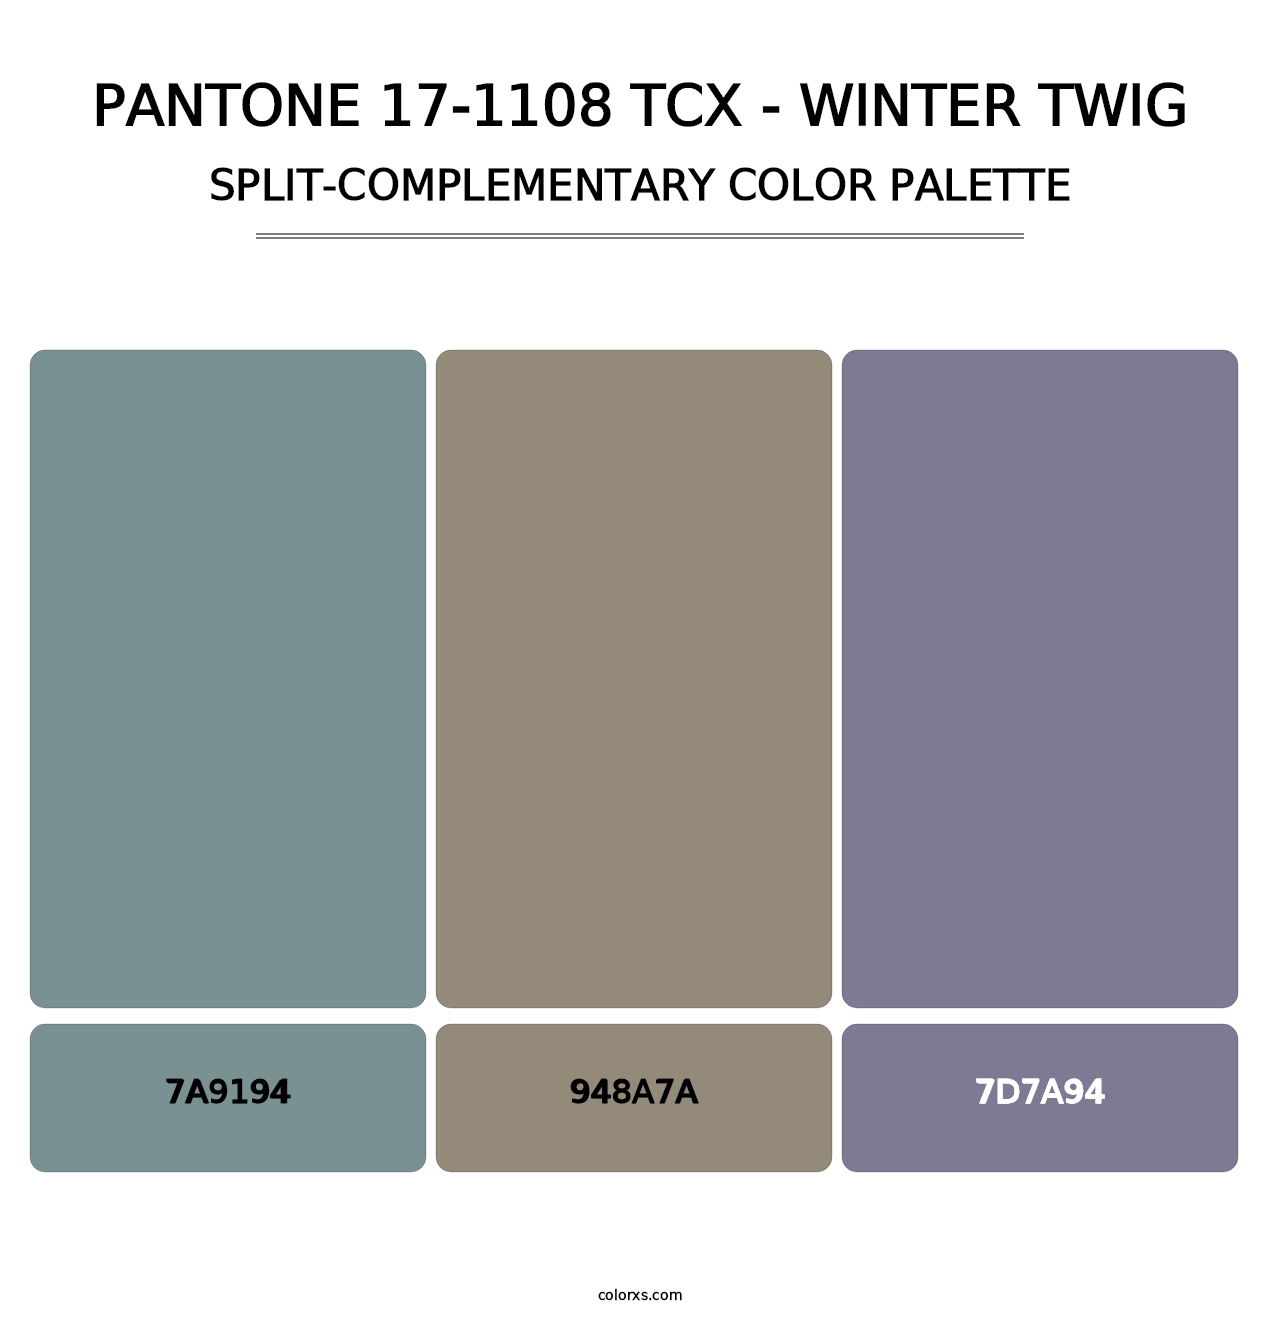 PANTONE 17-1108 TCX - Winter Twig - Split-Complementary Color Palette